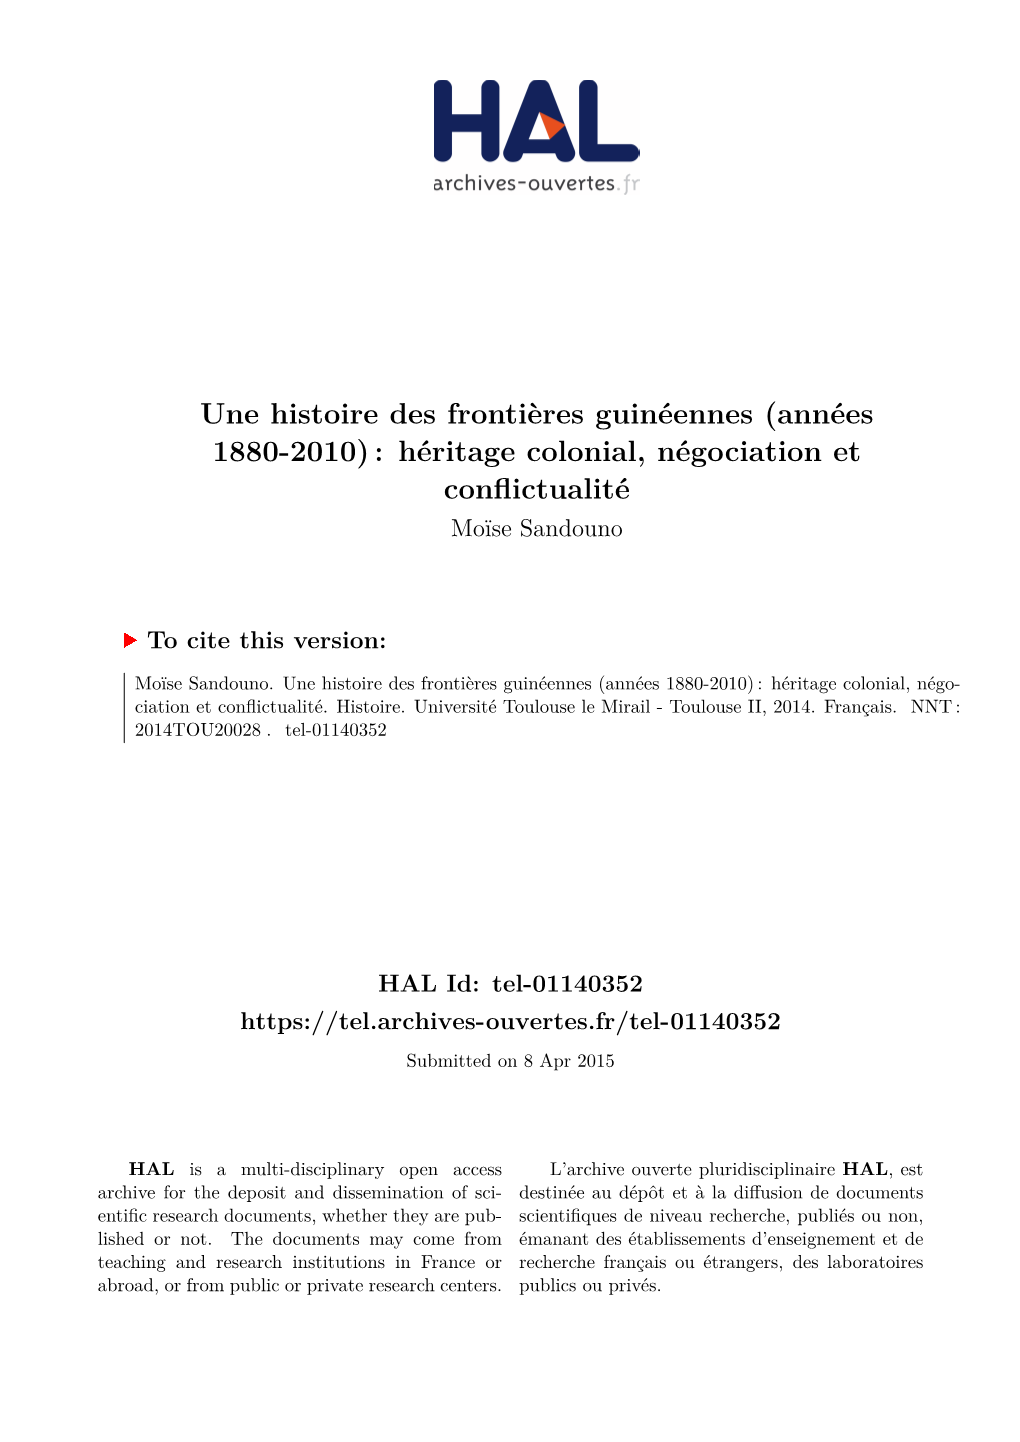 Une Histoire Des Frontières Guinéennes (Années 1880-2010) : Héritage Colonial, Négociation Et Conflictualité Moïse Sandouno